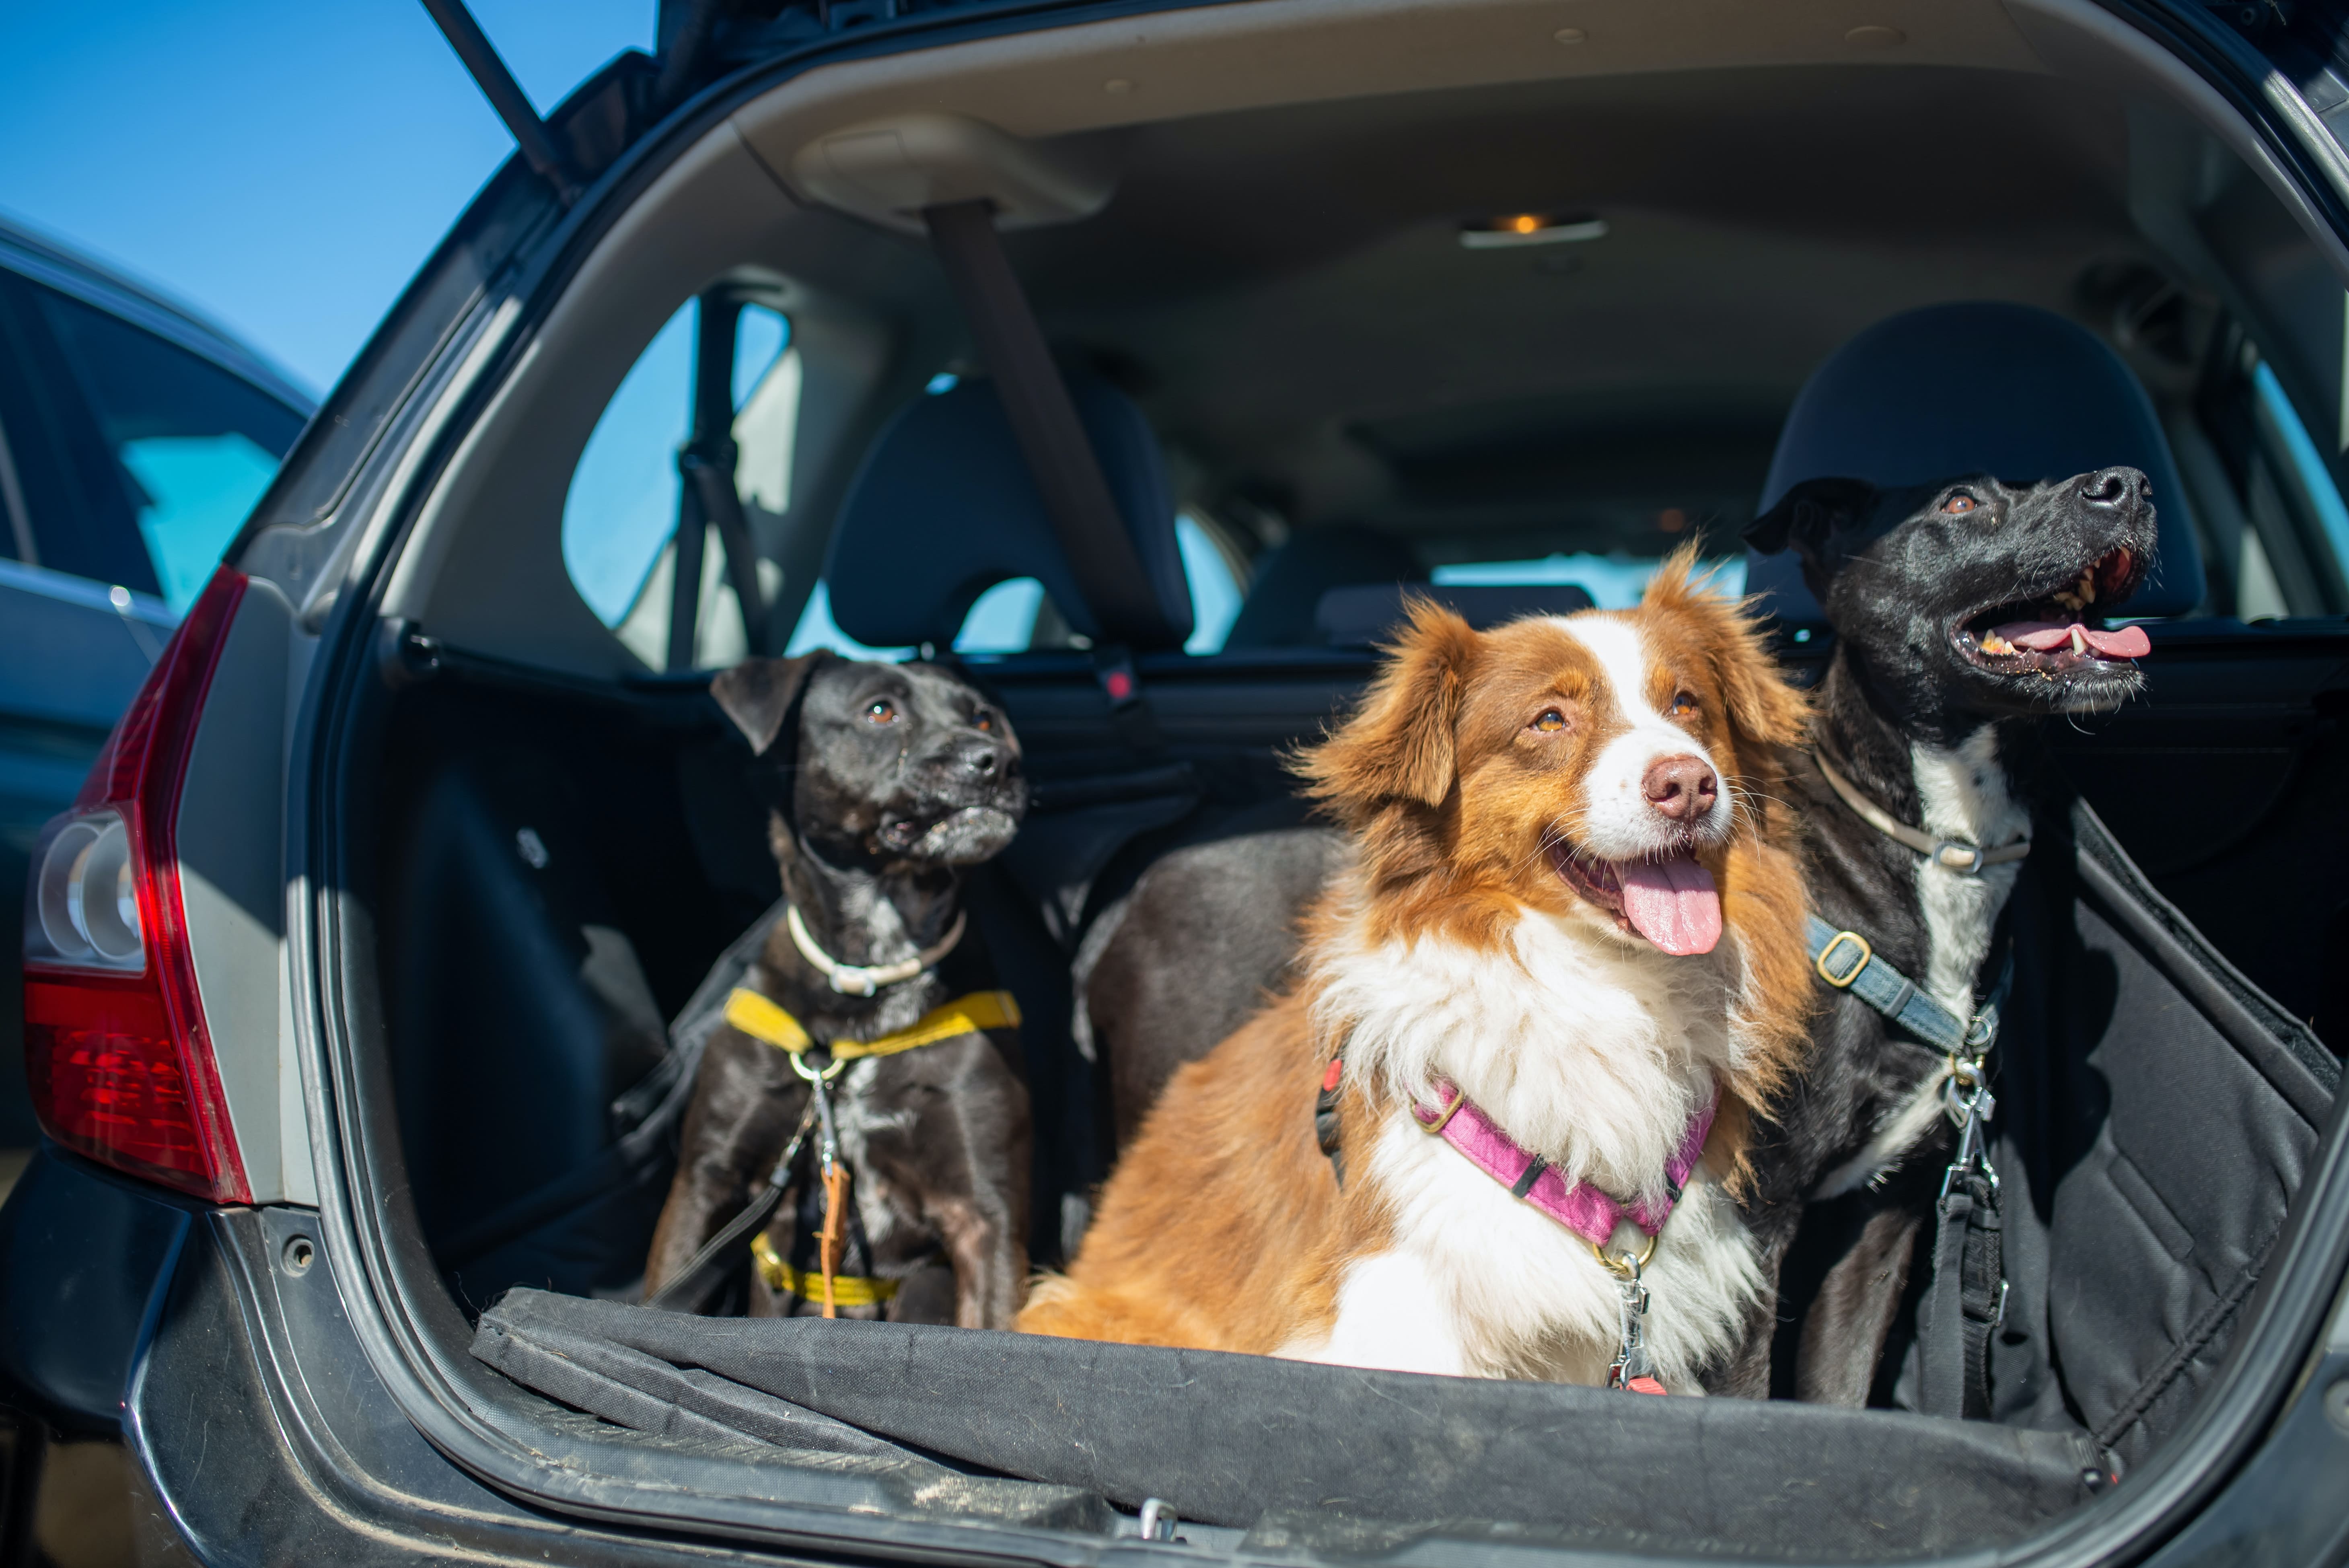 viajar con tu perro en coche